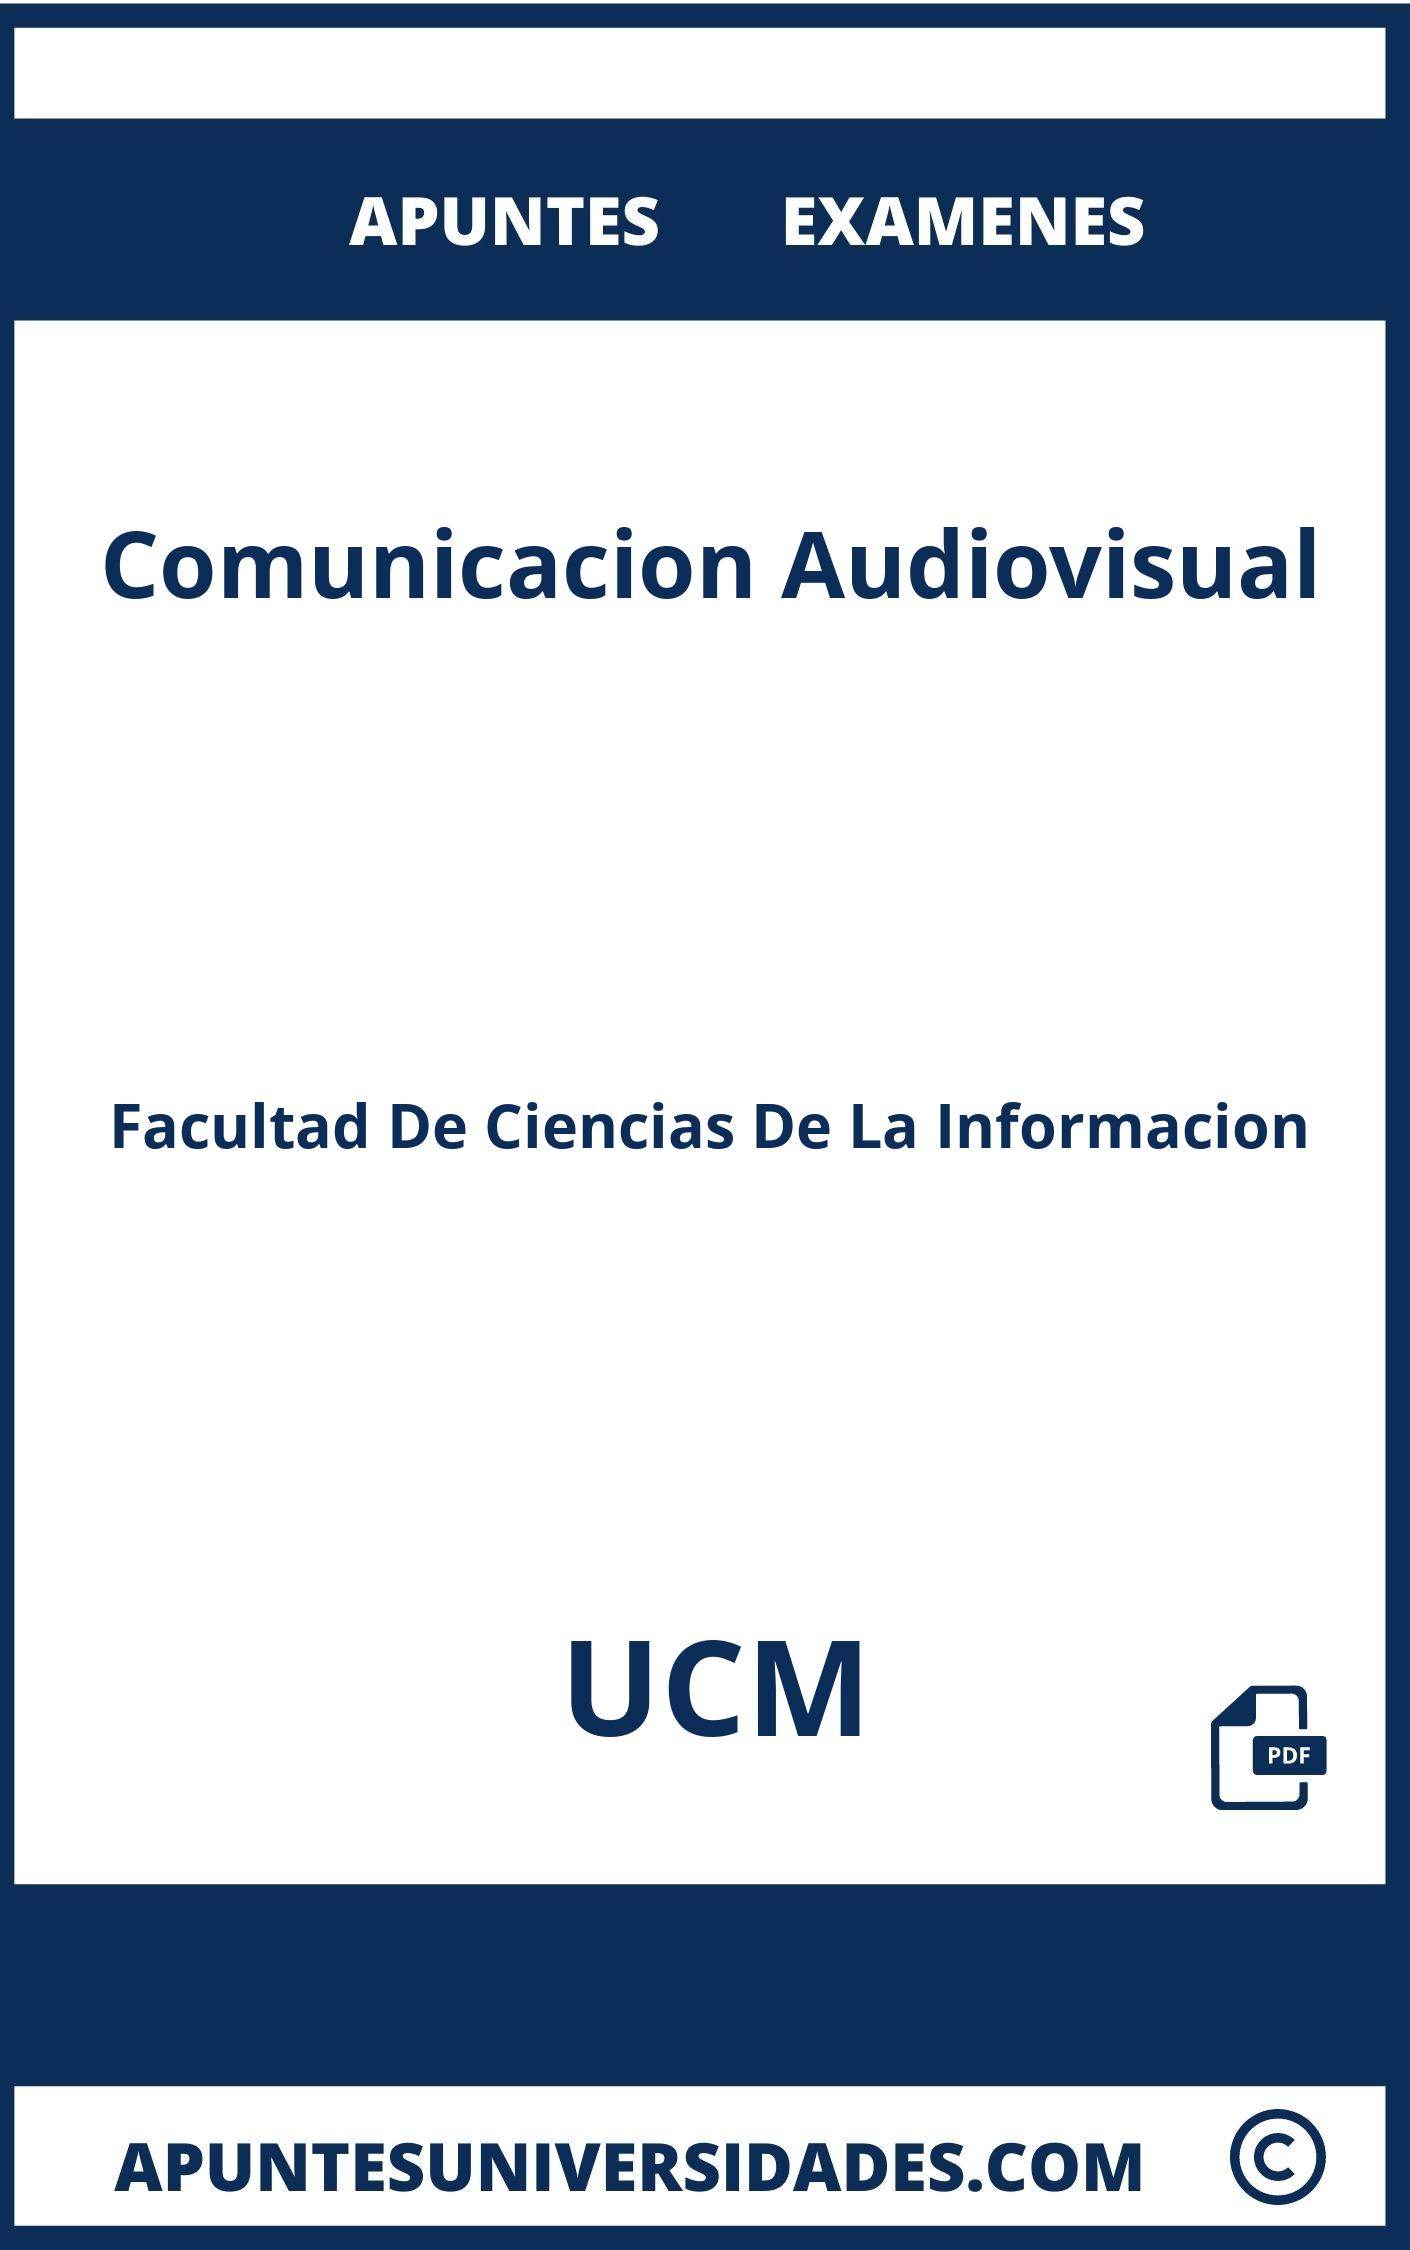 Apuntes y Examenes de Comunicacion Audiovisual UCM